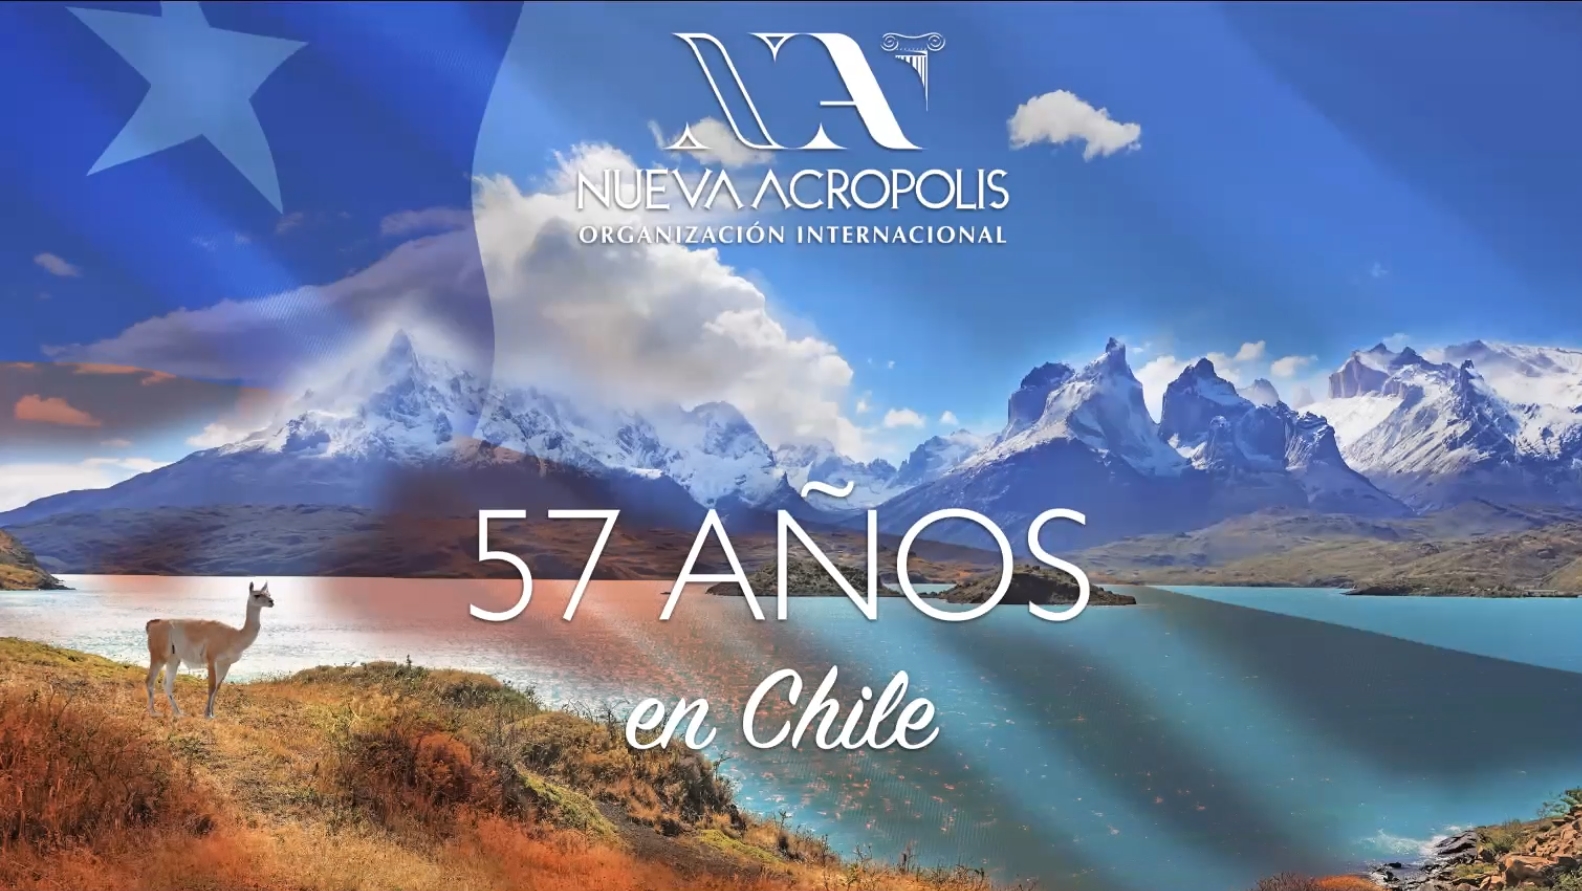 57 Aniversario de Nueva Acrópolis en Chile, Marzo 2022